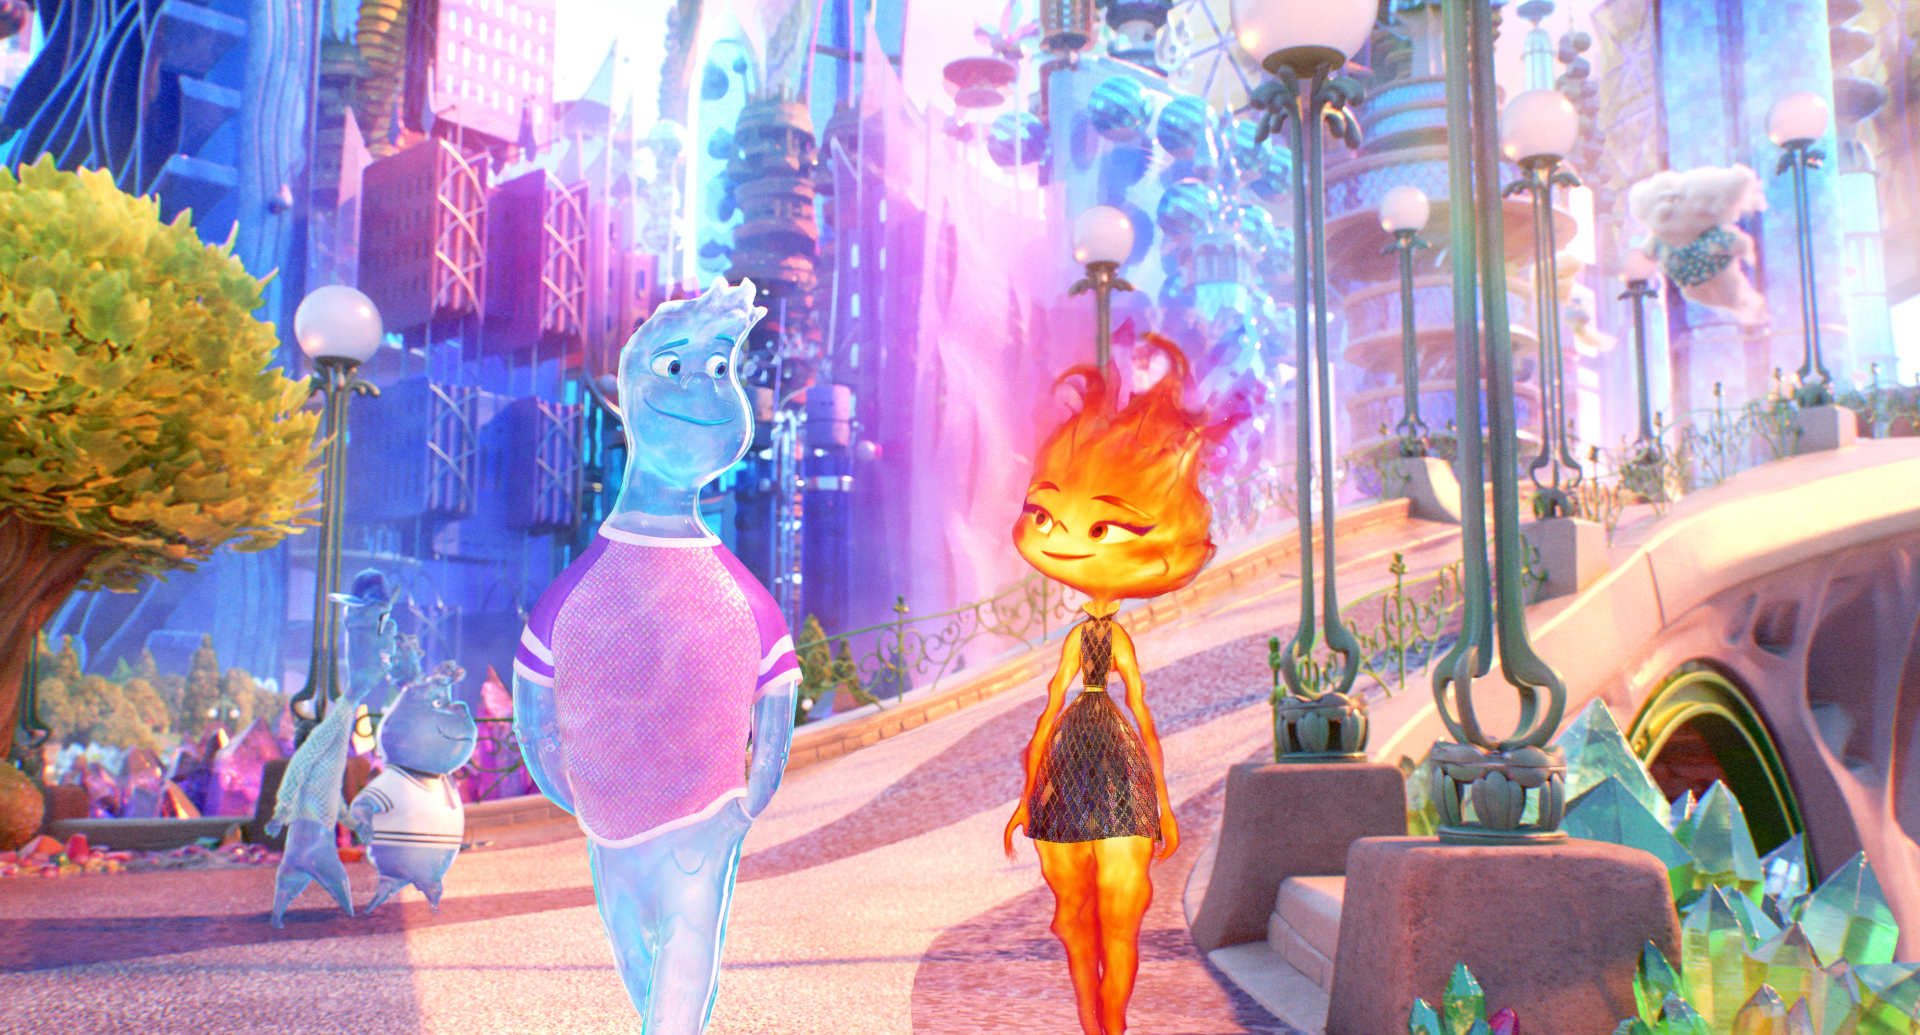 Hành trình của cặp đôi nguyên tố lửa-nước sẽ mang đến trải nghiệm thú vị cho khán giả (Ảnh:Pixar)